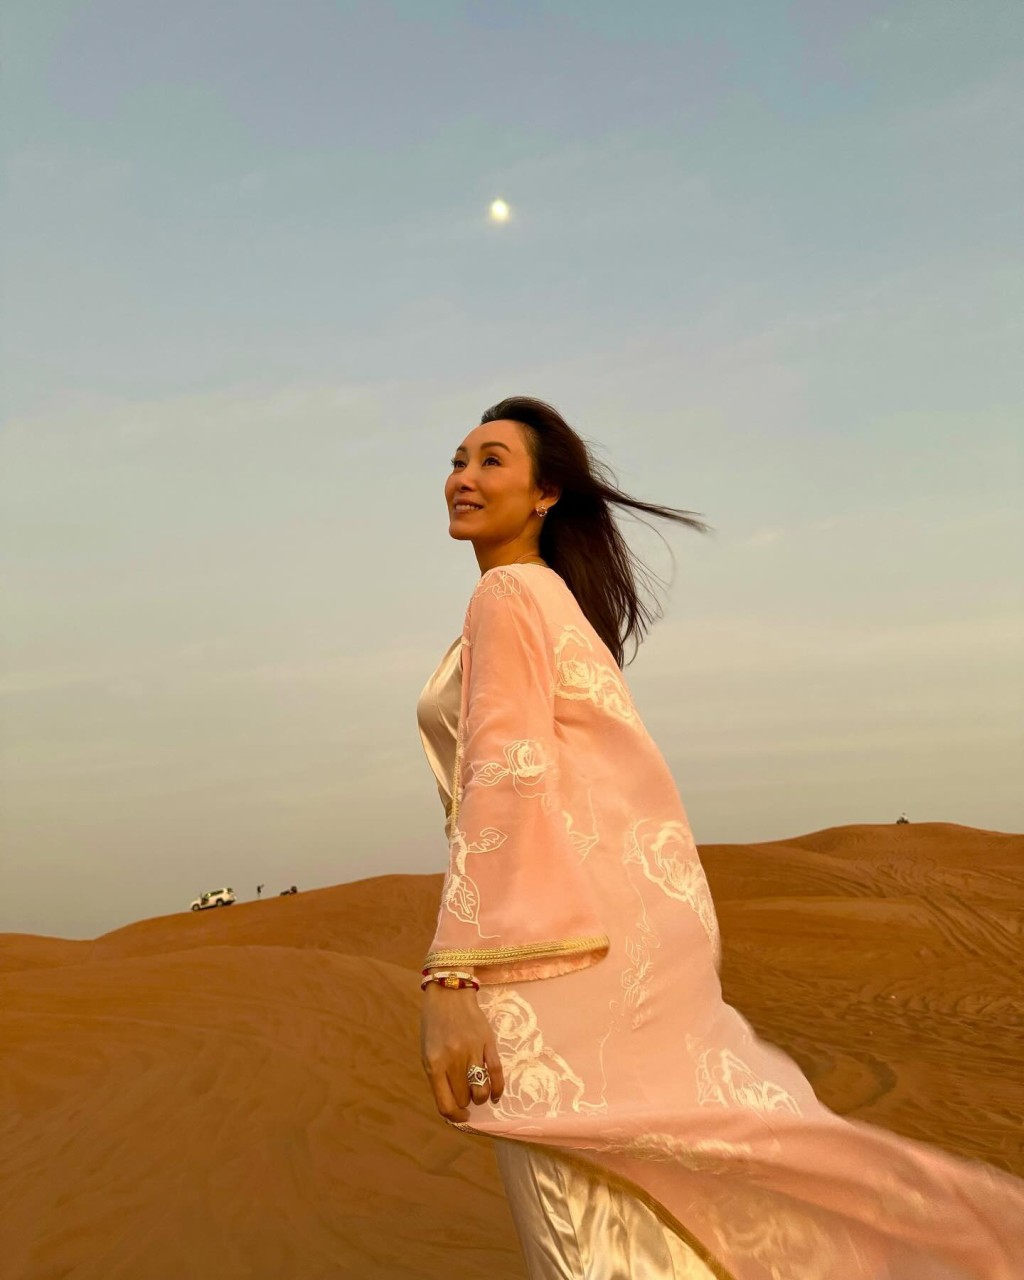 郭可盈在沙漠拍攝單人照。